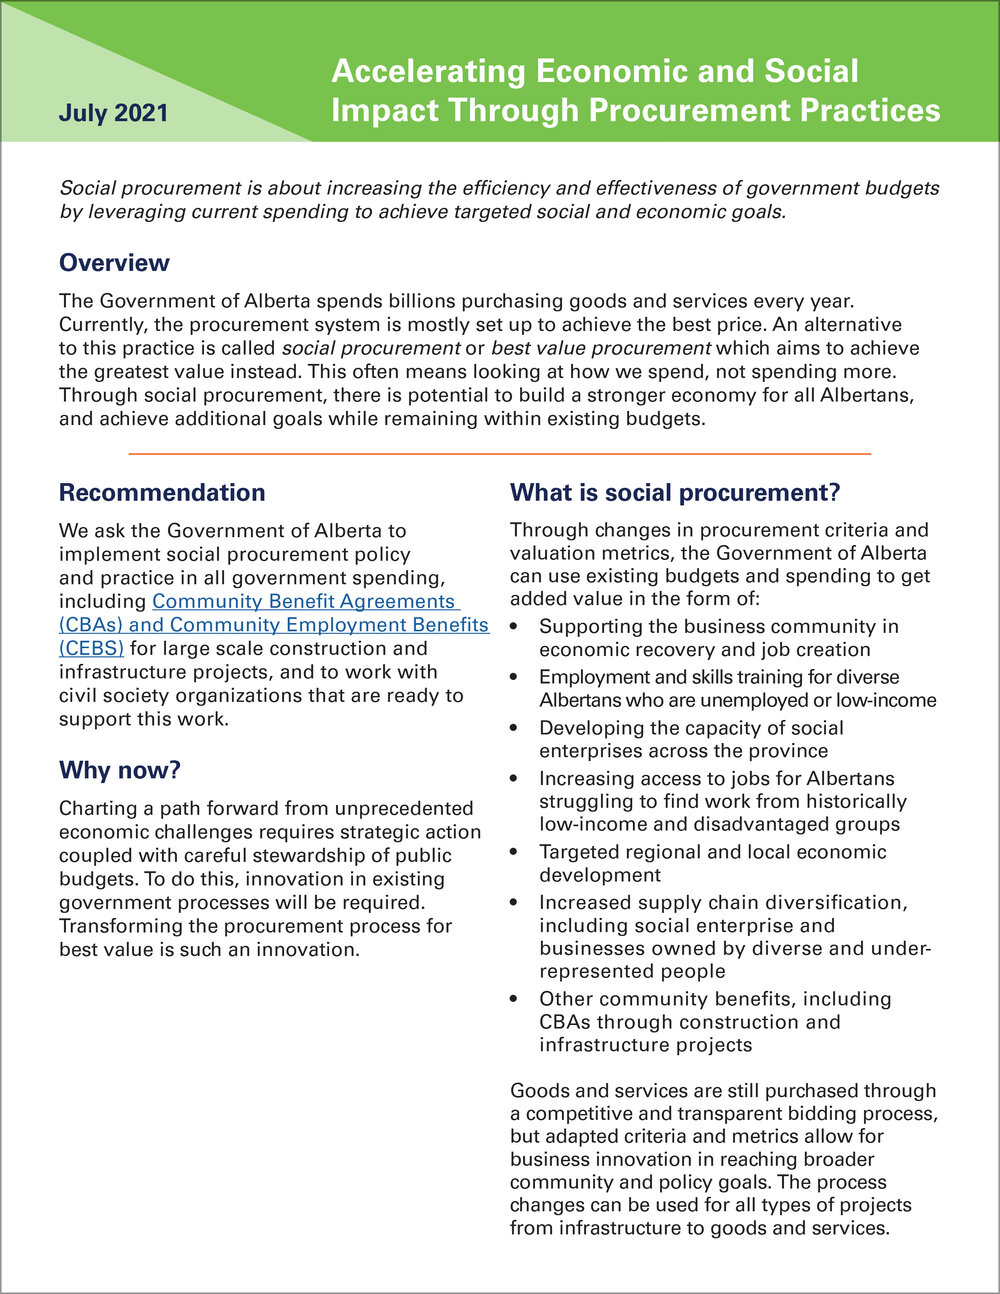 Social-Procurement-Brief__Accelerating-Economic-and-Social-Impact-Through-Procurement-Practices.jpg